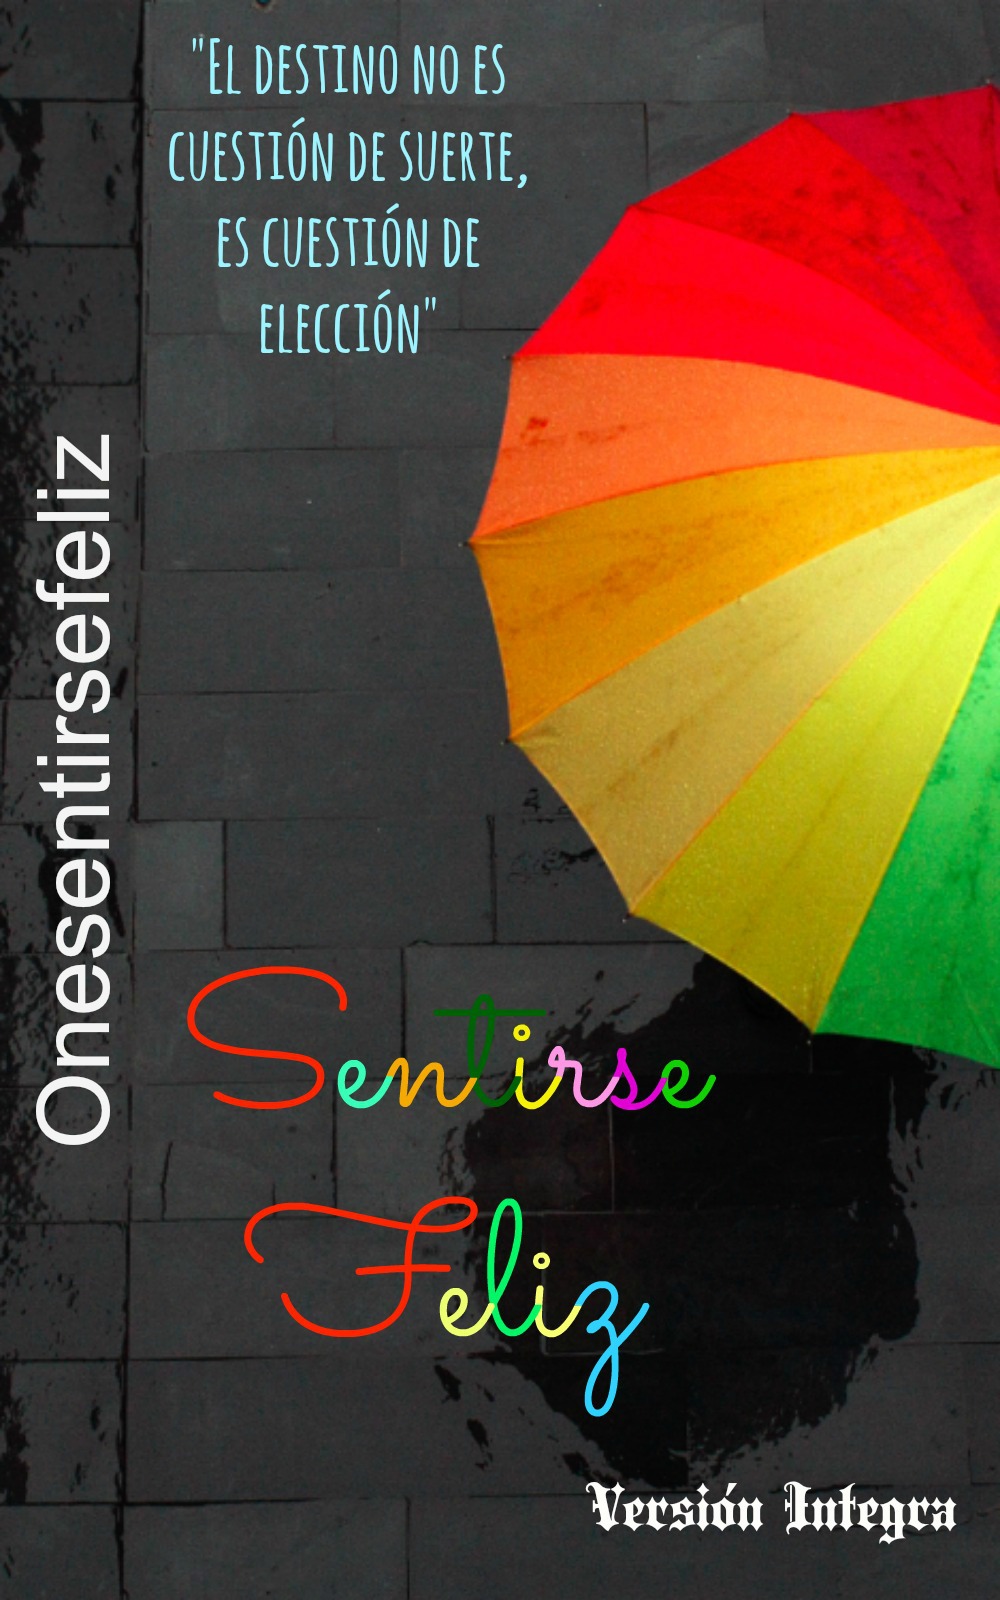 EBOOK DE DESARROLLO PERSONAL: "SENTIRSE FELIZ"